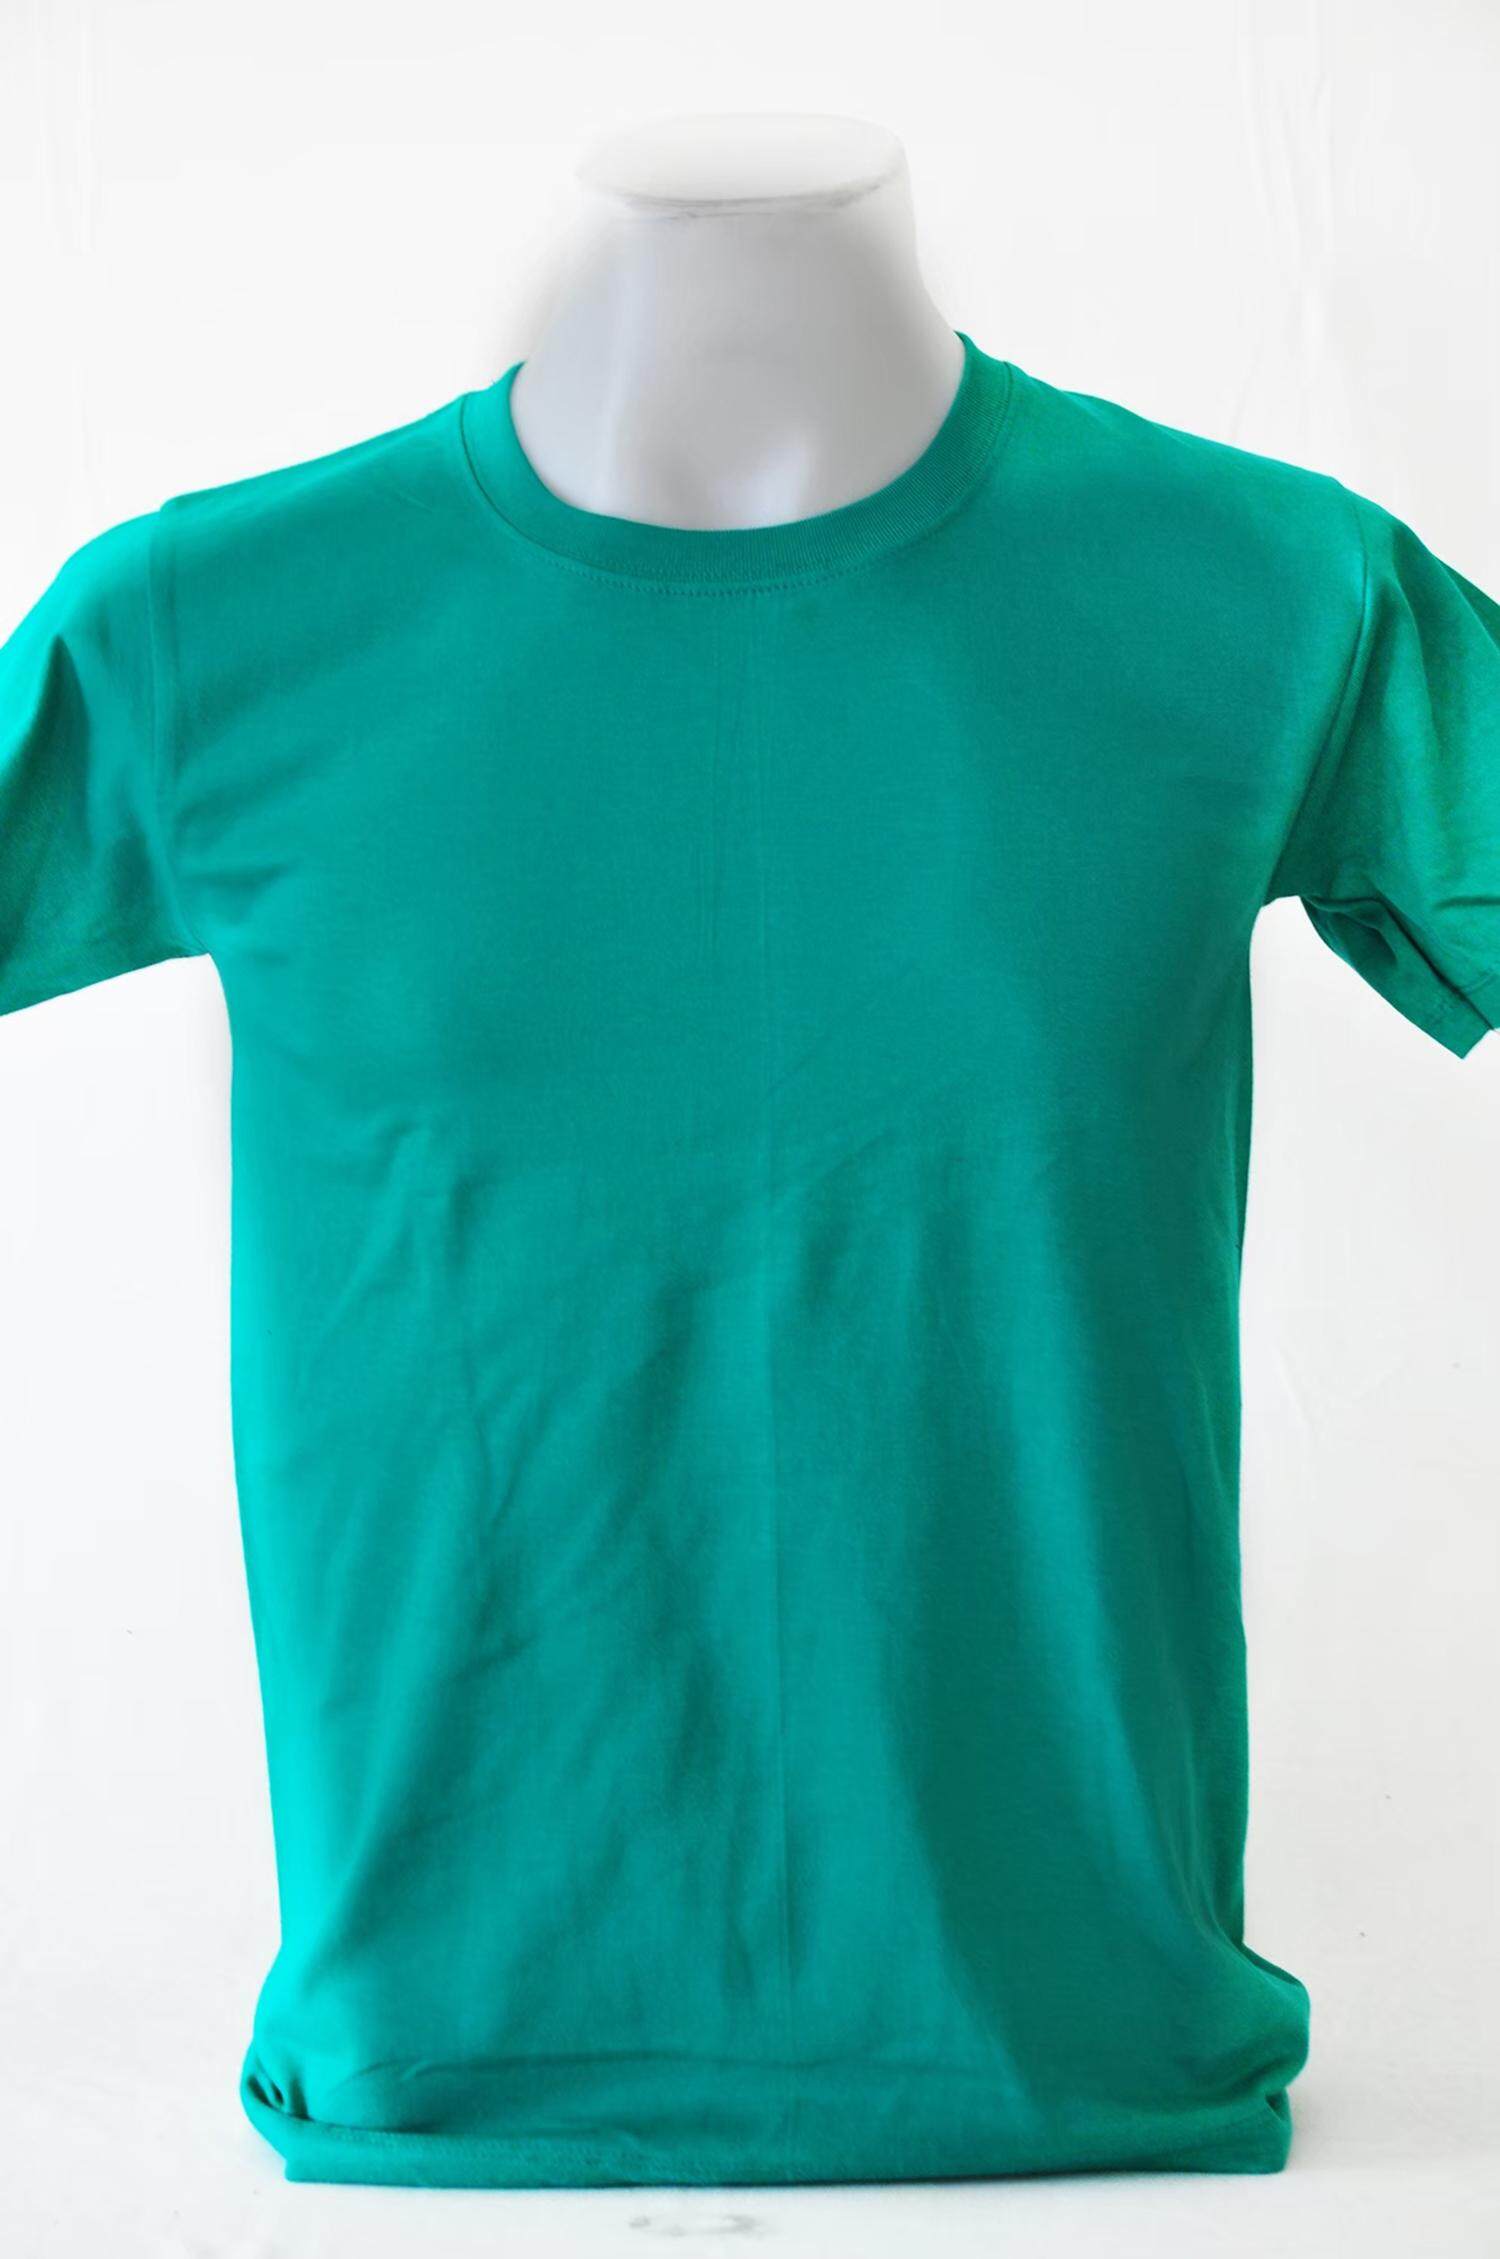 เสื้อยืดคอกลมสีพื้นผ้านิ่มใส่สบาย cotton100% เบอร์20 เสื้อยืดผู้ชาย ราคาเริ่มต้น 50 บาท